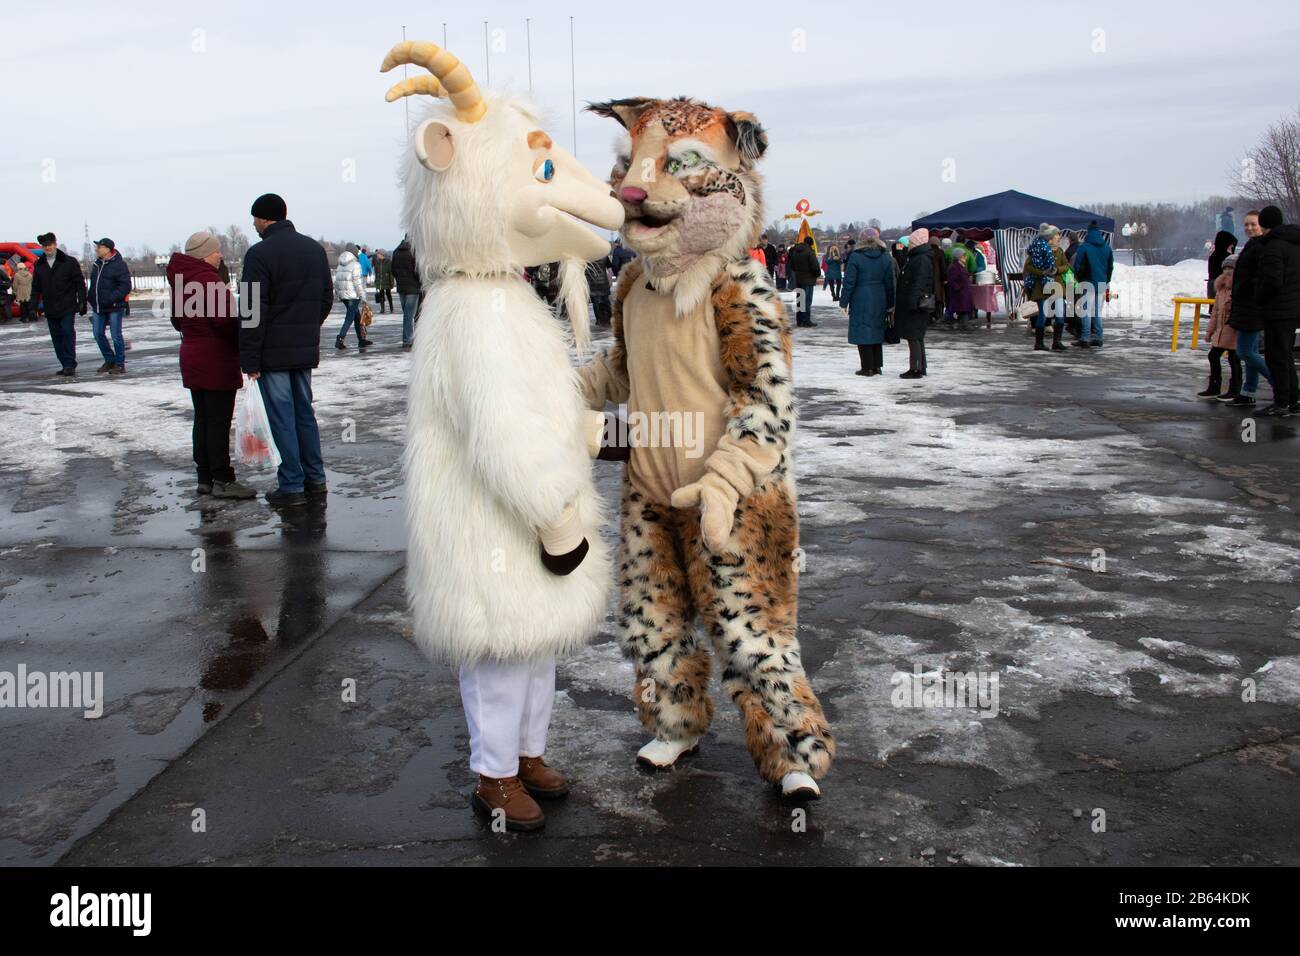 Russie. Rybinsk 1. Mars. 2020. Jours fériés et douanes. Une chèvre farcie au premier plan. Mommers masqués en arrière-plan Banque D'Images